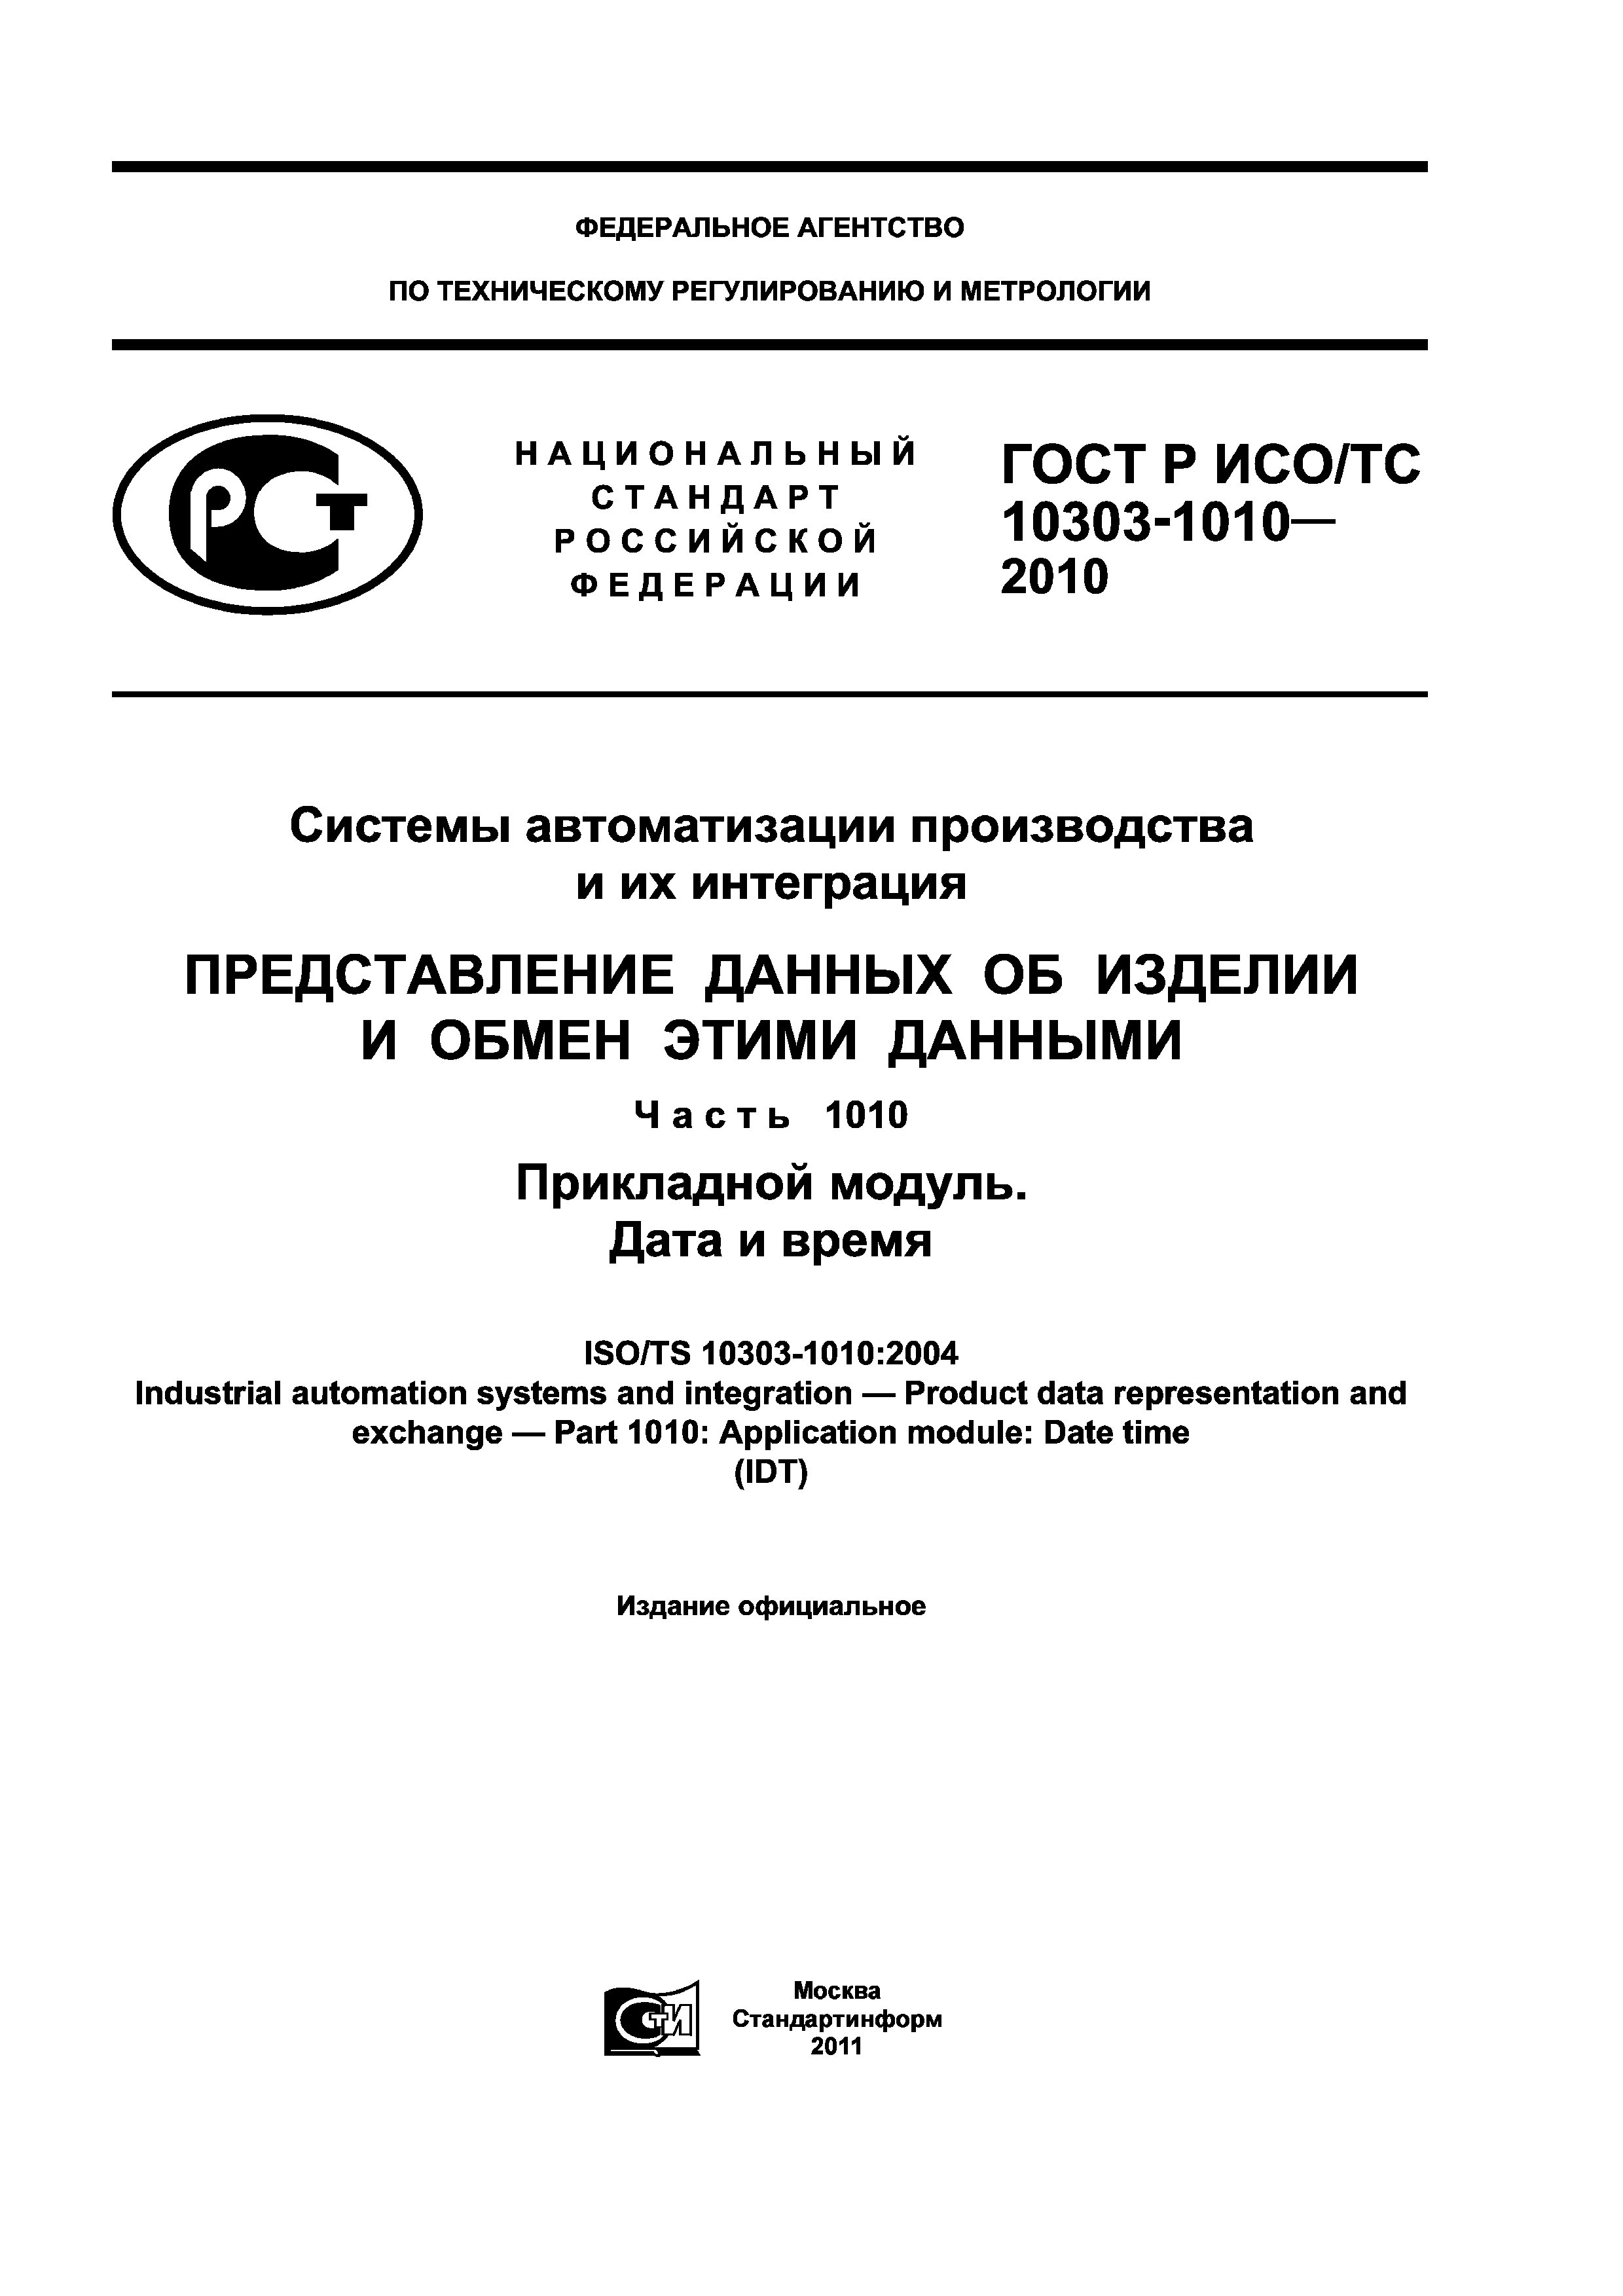 ГОСТ Р ИСО/ТС 10303-1010-2010